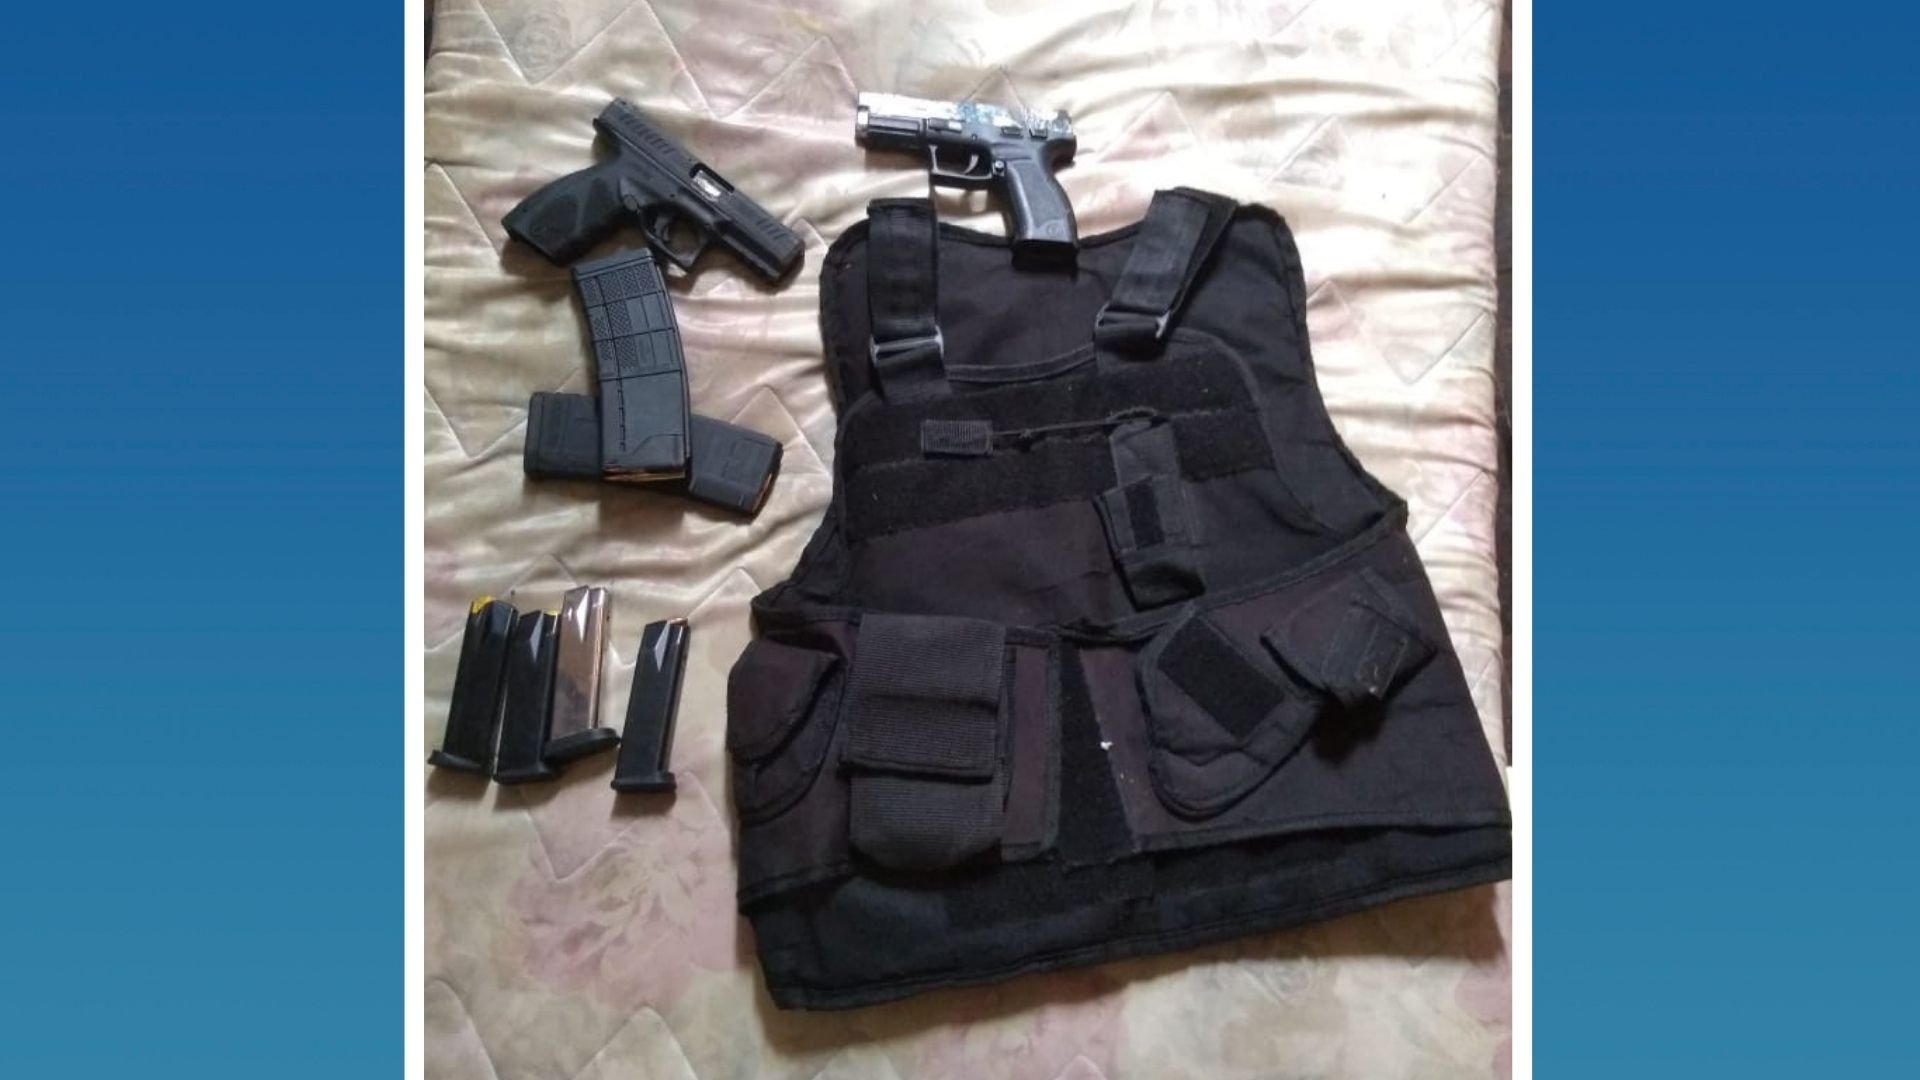 Armas, munições e colete balístico apreendido durante patrulhamento no morro do Moscoso, em Vitória